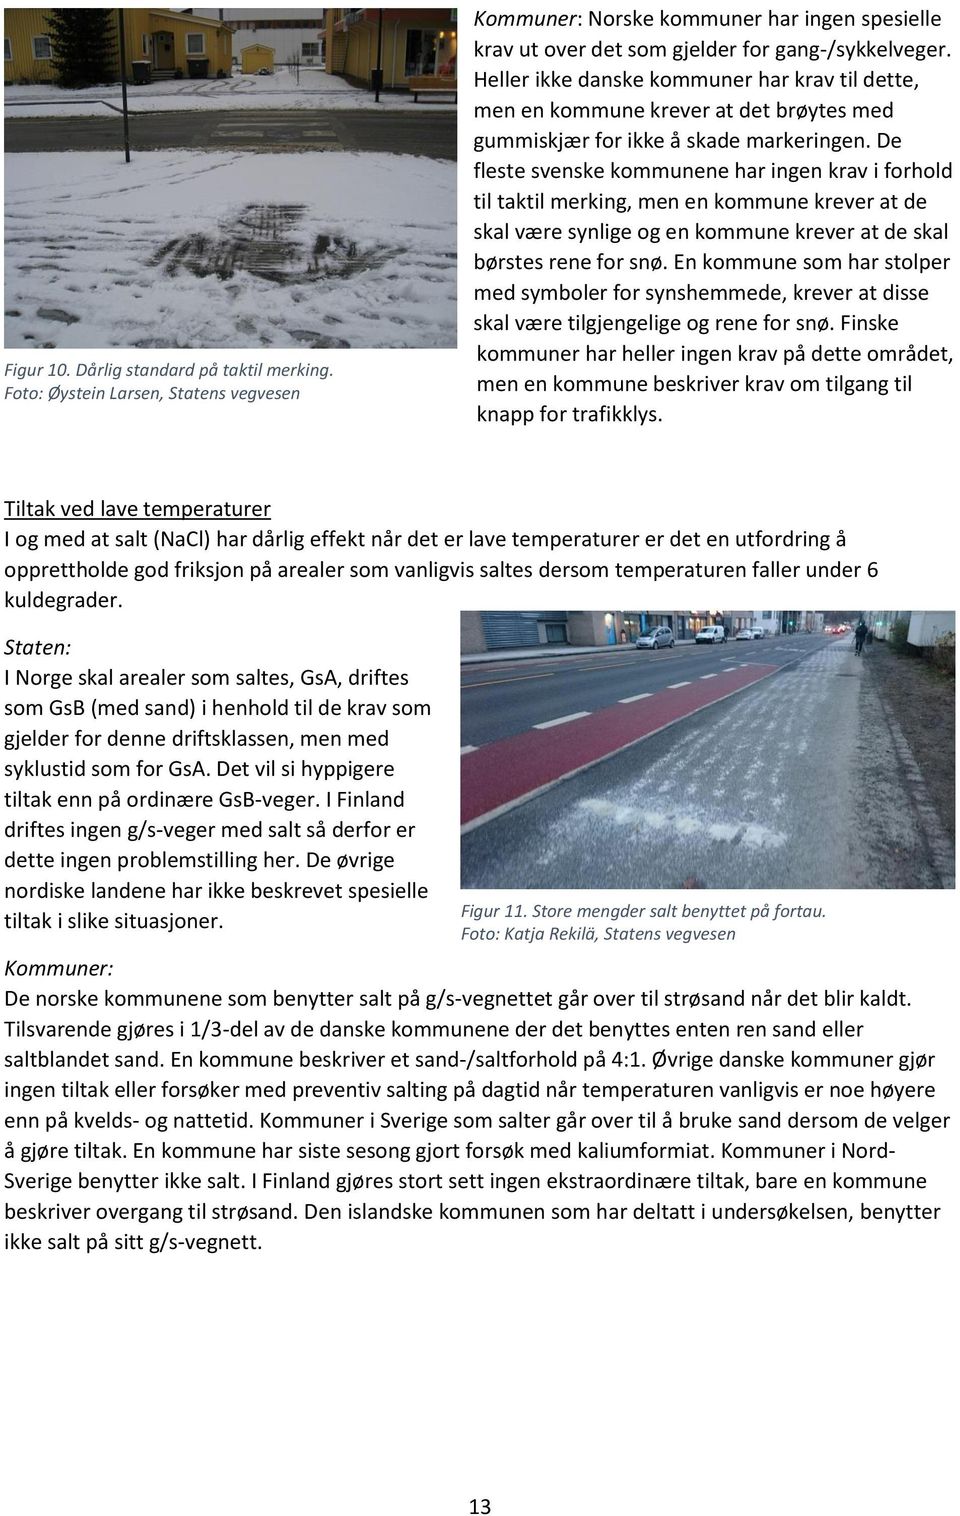 De fleste svenske kommunene har ingen krav i forhold til taktil merking, men en kommune krever at de skal være synlige og en kommune krever at de skal børstes rene for snø.